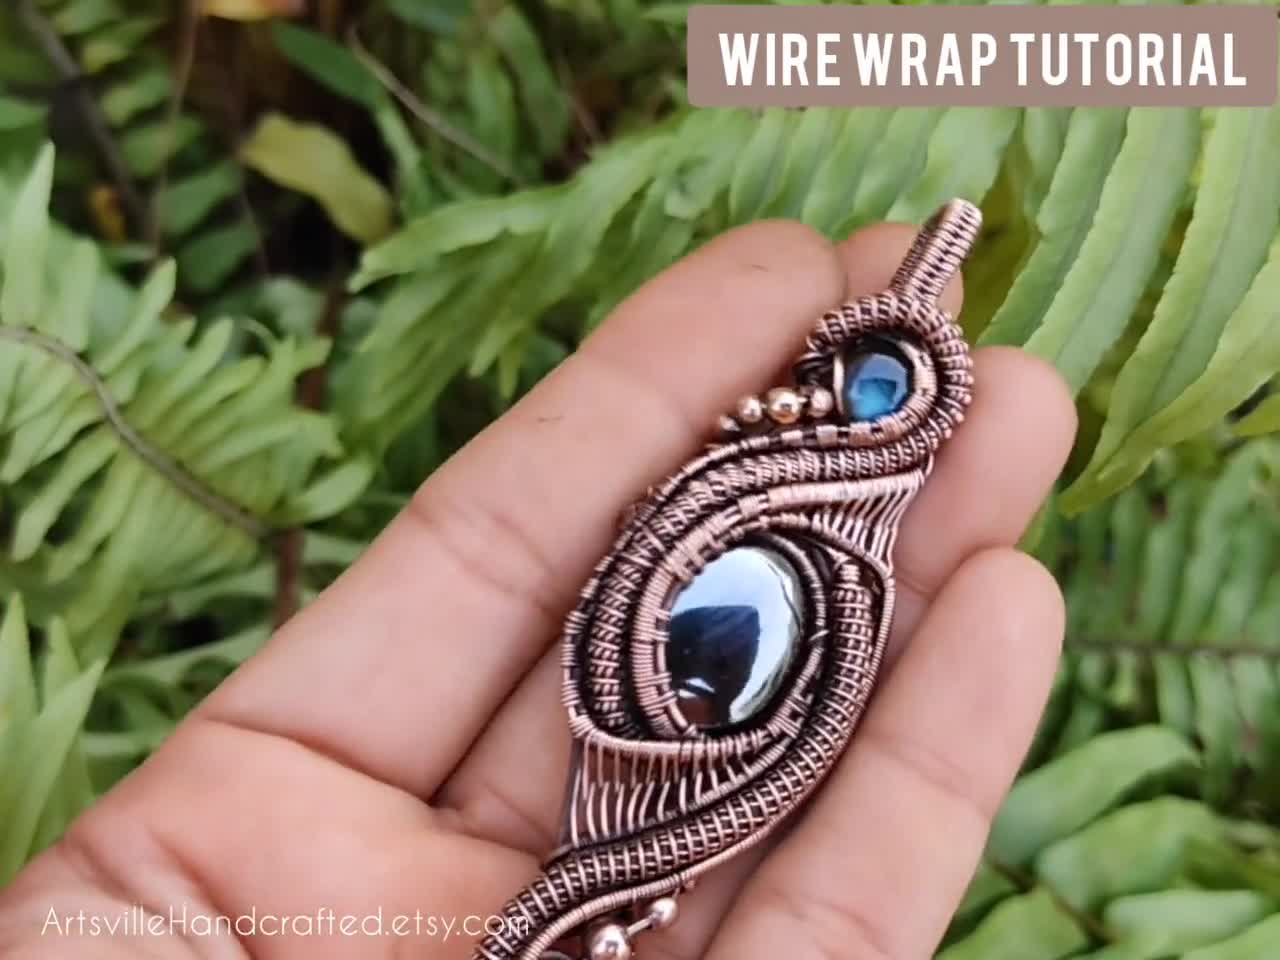 22 Gauge Round Dead Soft Copper Wire: Wire Jewelry, Wire Wrap Tutorials